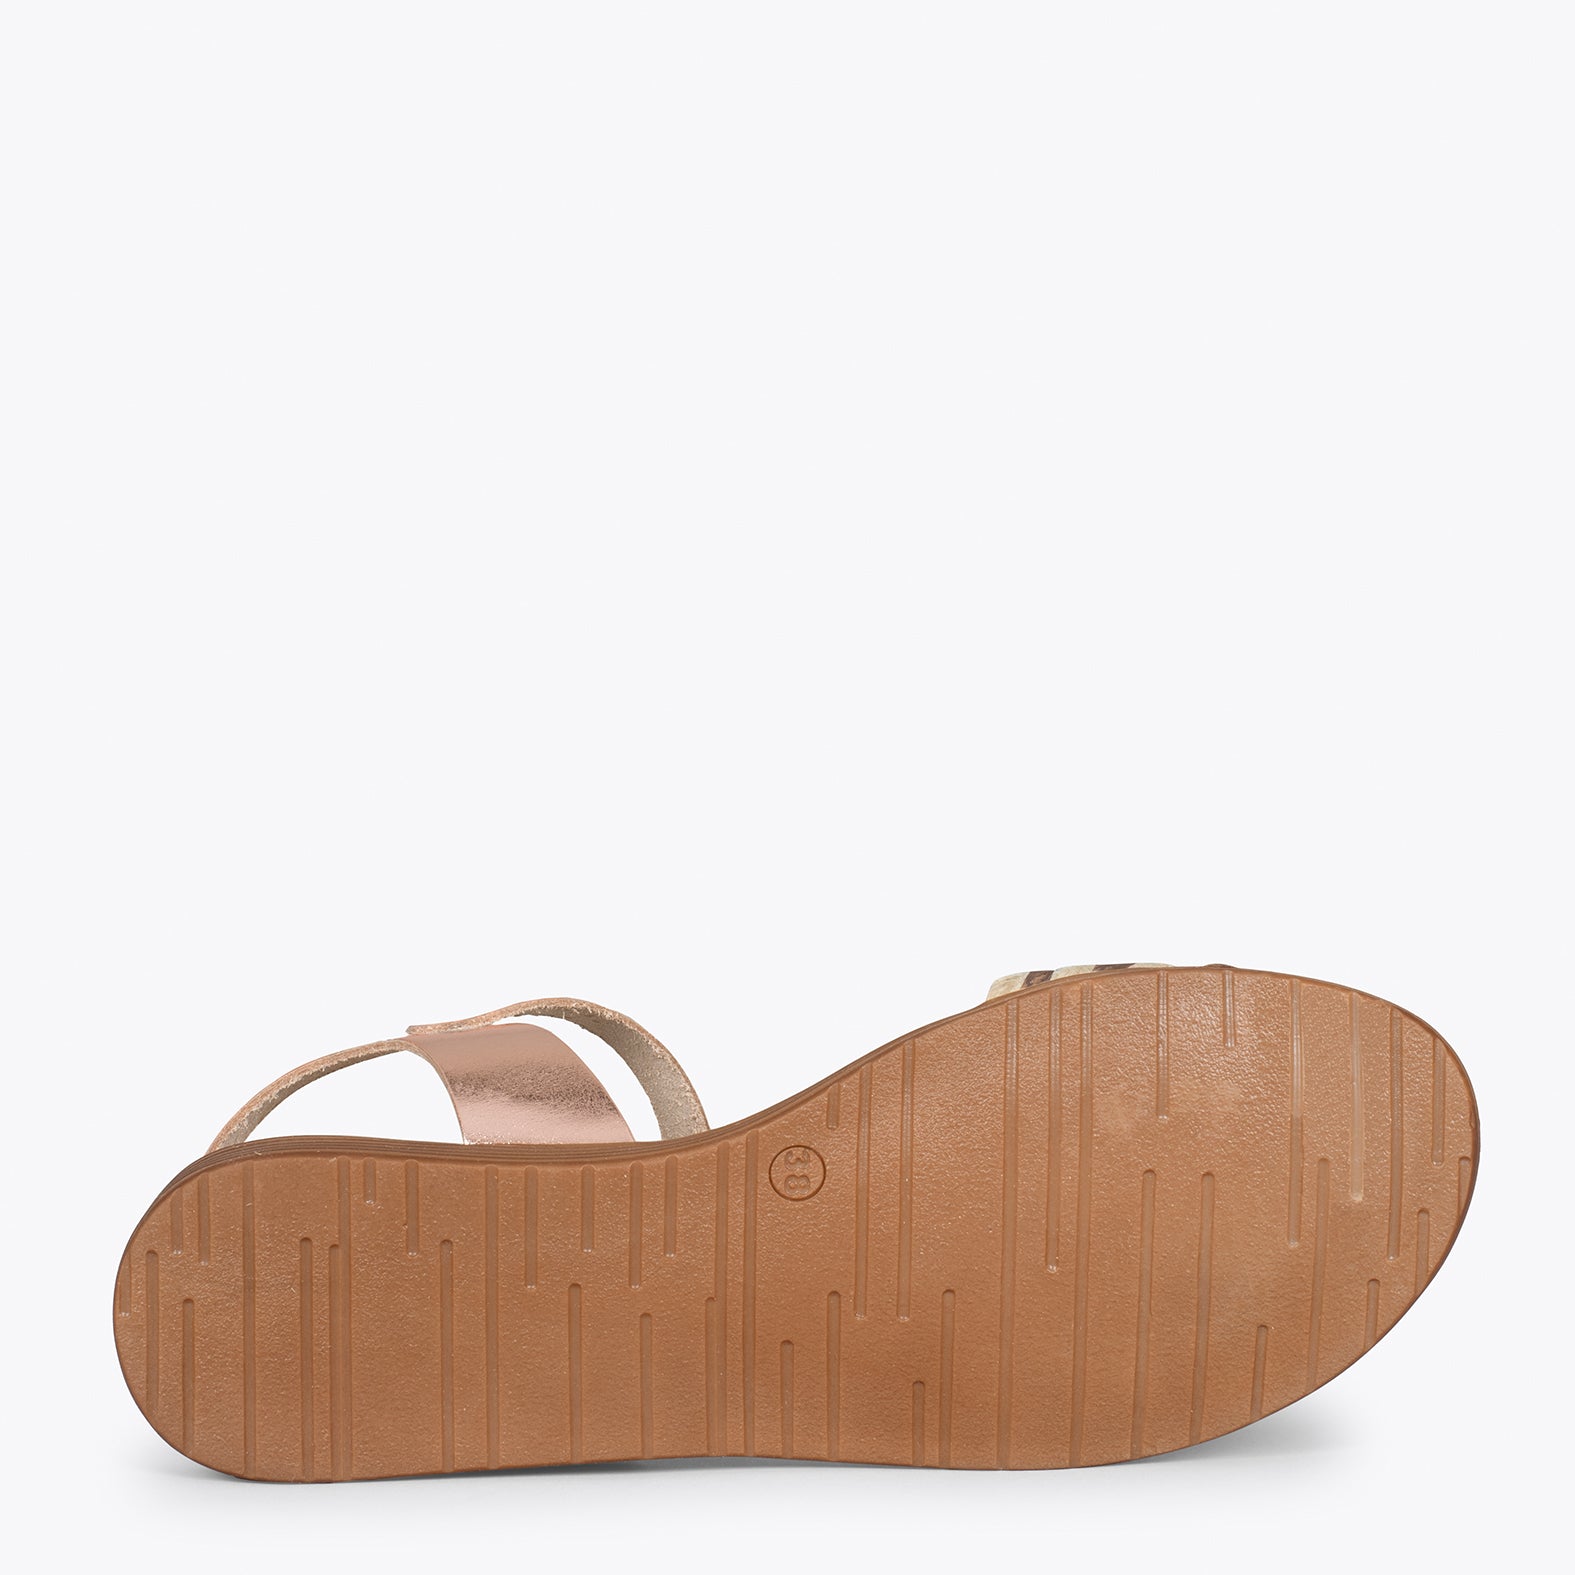 CERES – ROSE metallic flat sandal